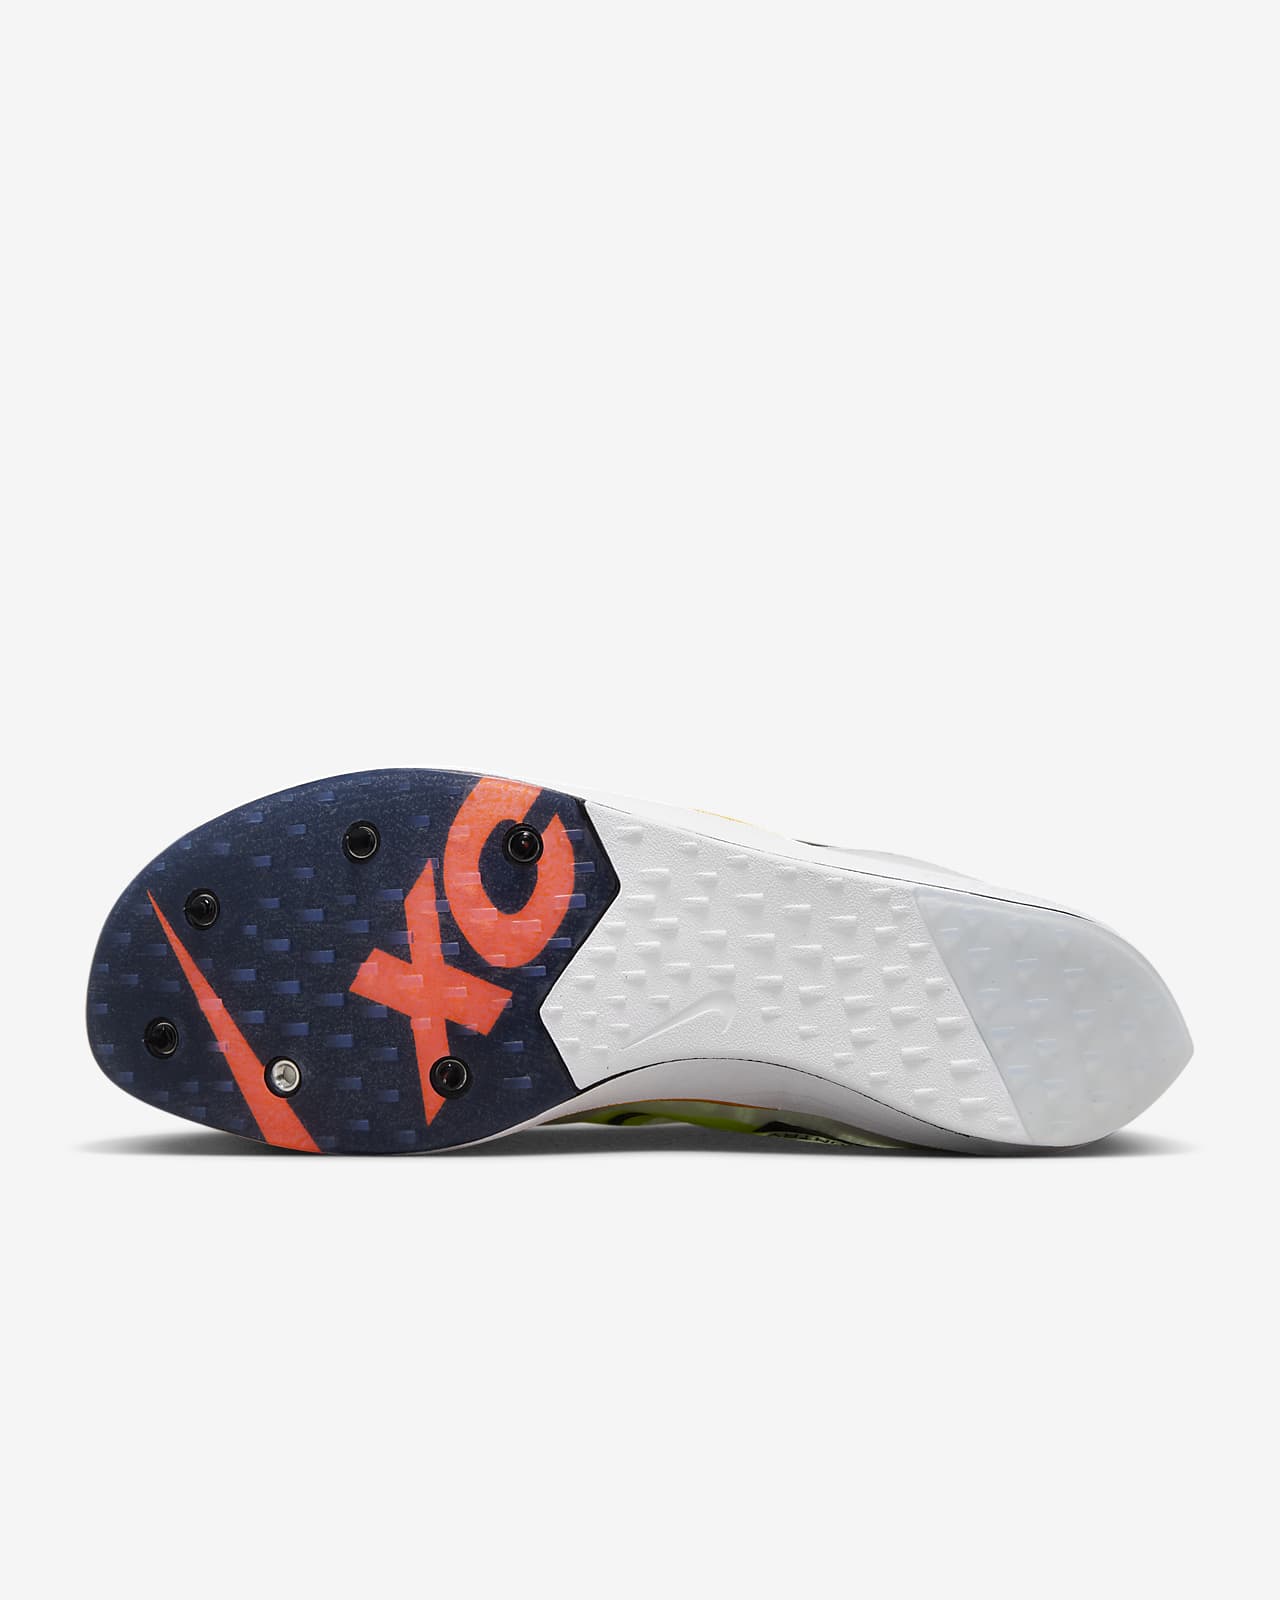 Nike ZoomX Dragonfly chaussures de course à pointes - SP23 - 40% de remise